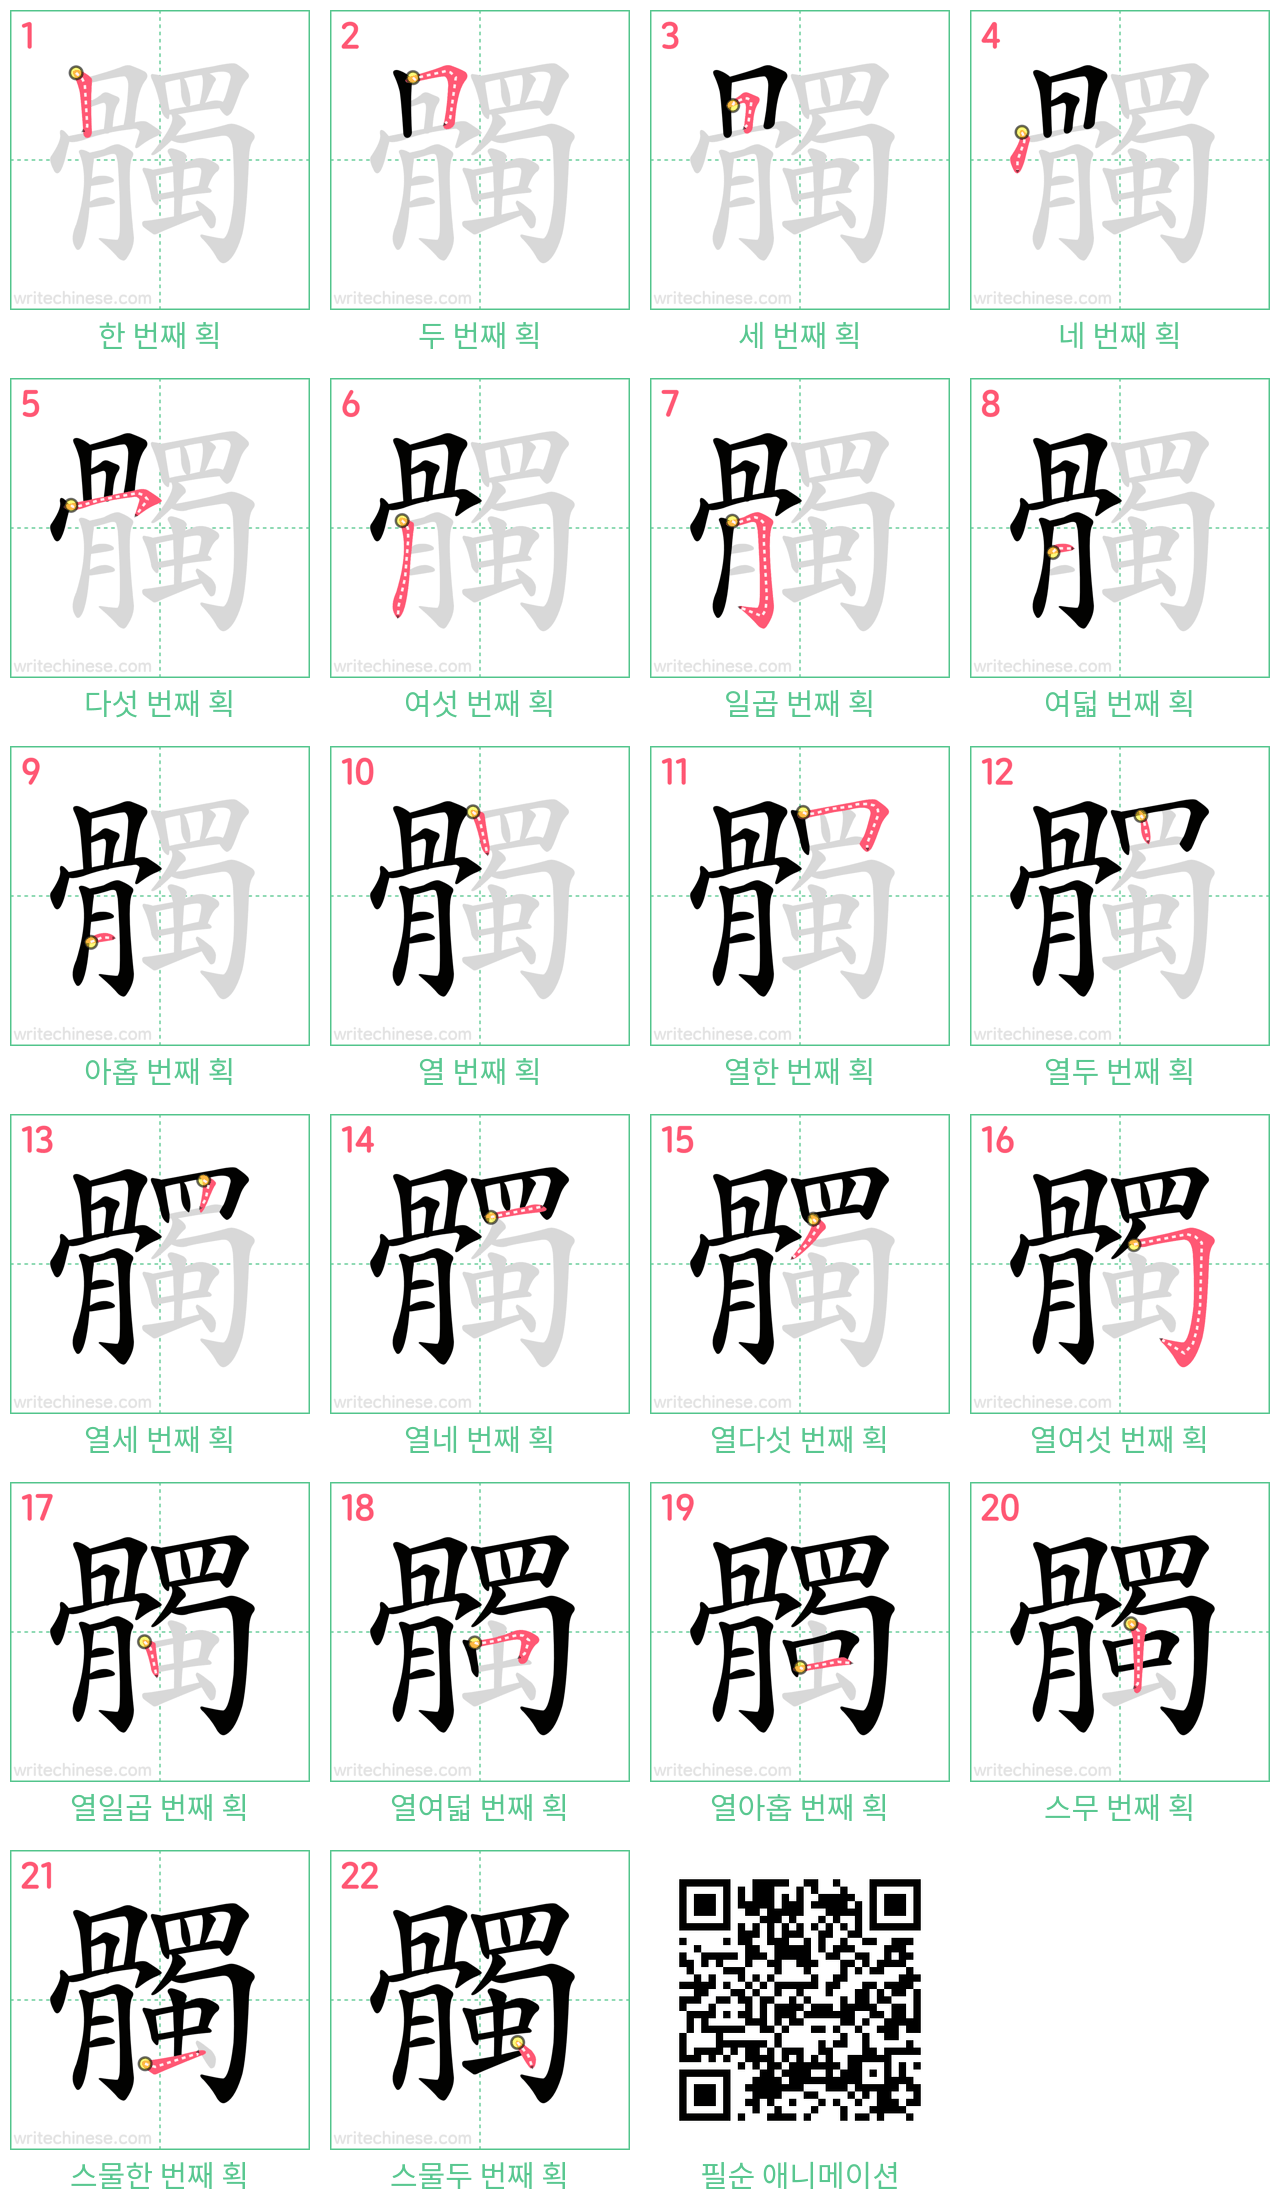 髑 step-by-step stroke order diagrams